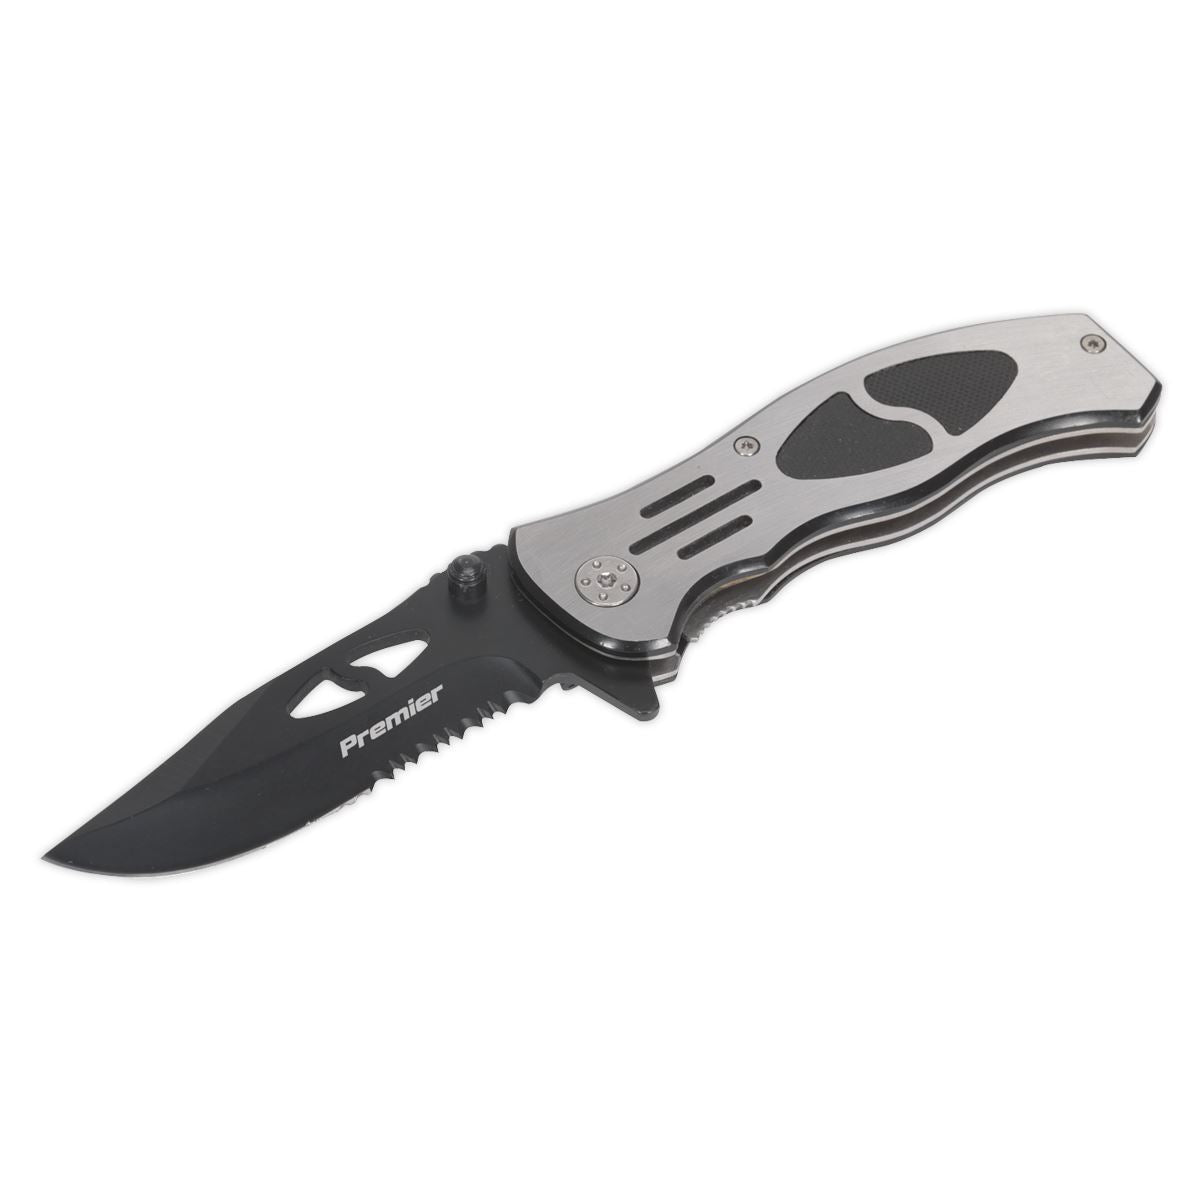 Sealey Premier Pocket Knife Locking Large